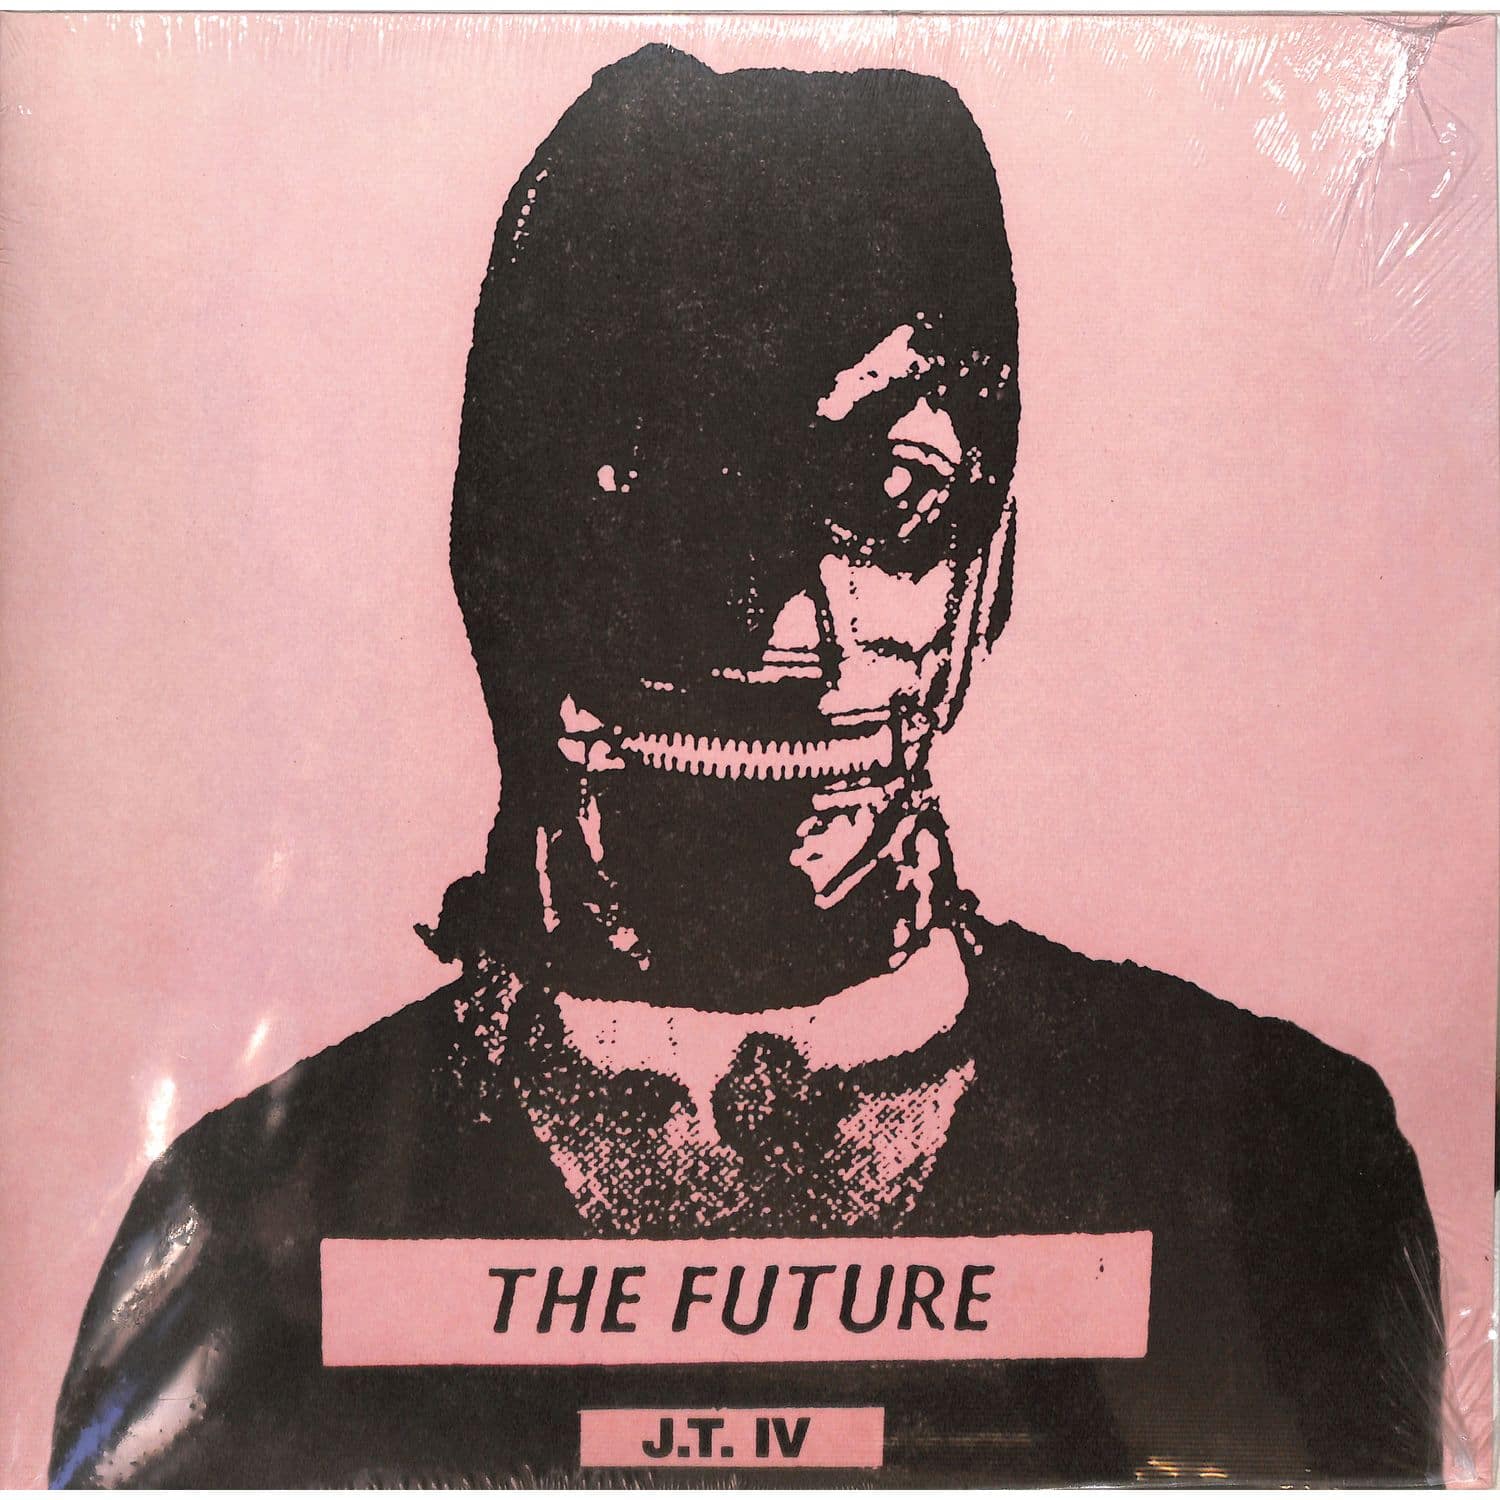 J.T. IV - THE FUTURE 